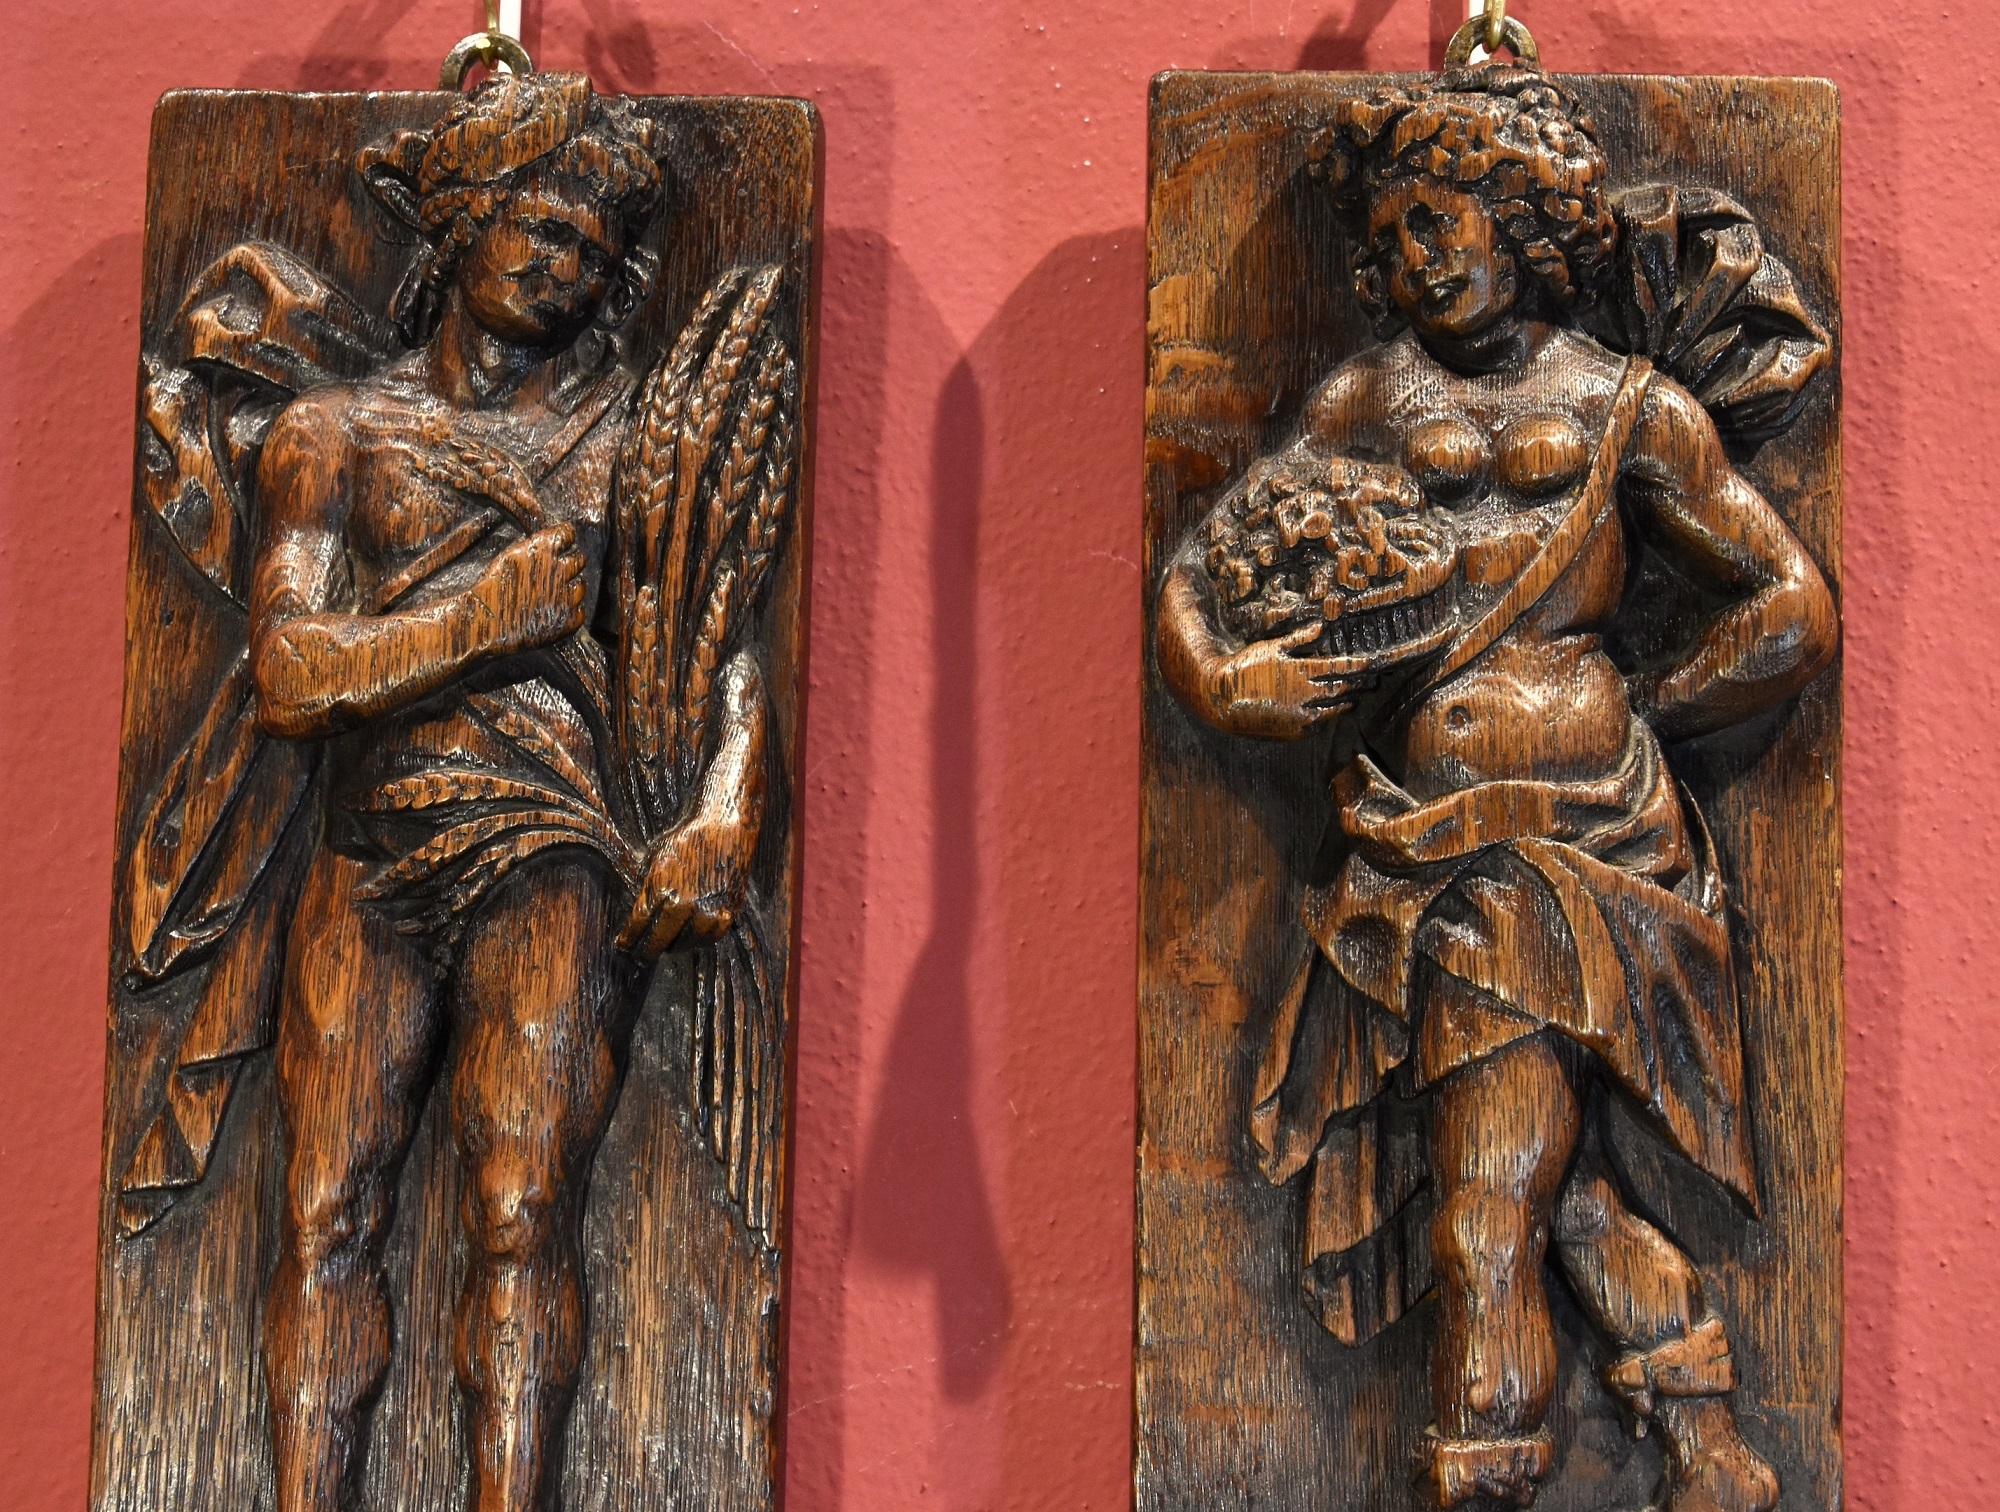 Antichità Castelbarco SRLS est fière de présenter :

Sculpteur flamand du 17e siècle
Paire de panneaux en bas-relief représentant l'Allégorie du printemps et l'Allégorie de l'automne

Bois de chêne
Chacun 45 x 14 cm.

Il s'agit d'une paire de frises